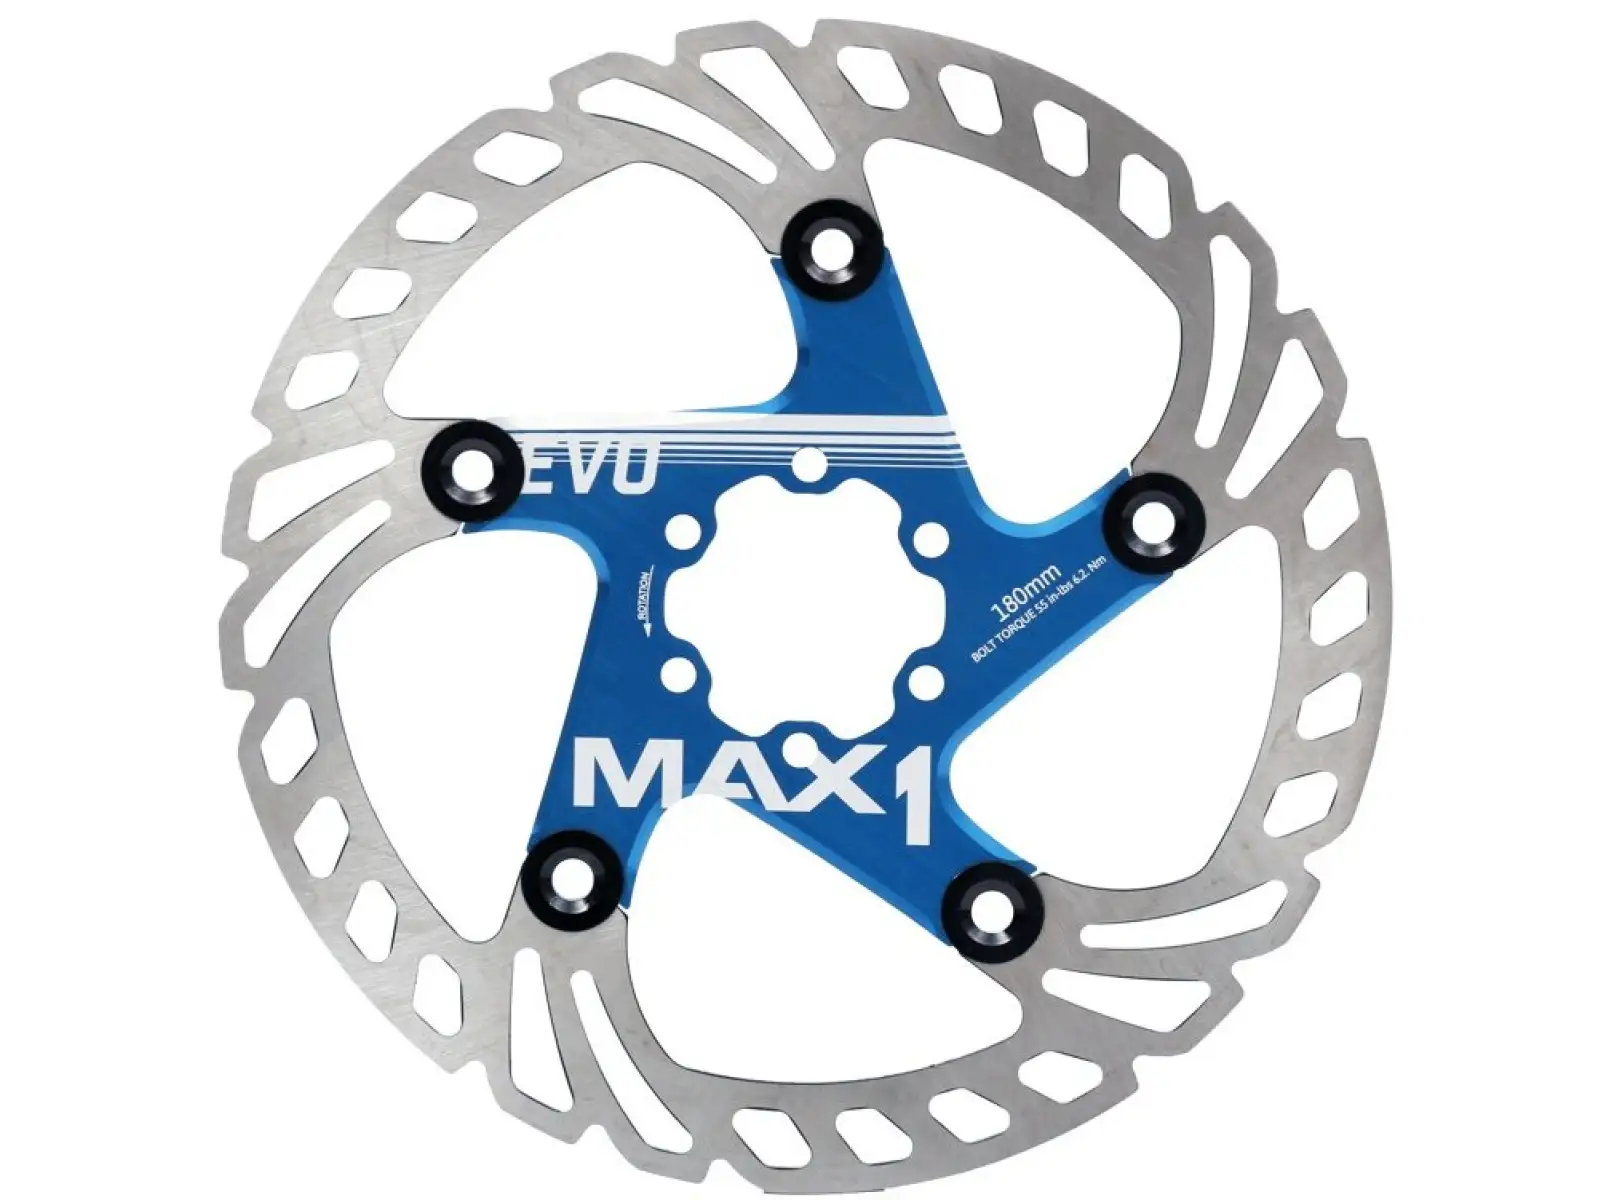 MAX1 Evo brzdový kotouč 180 mm modrý